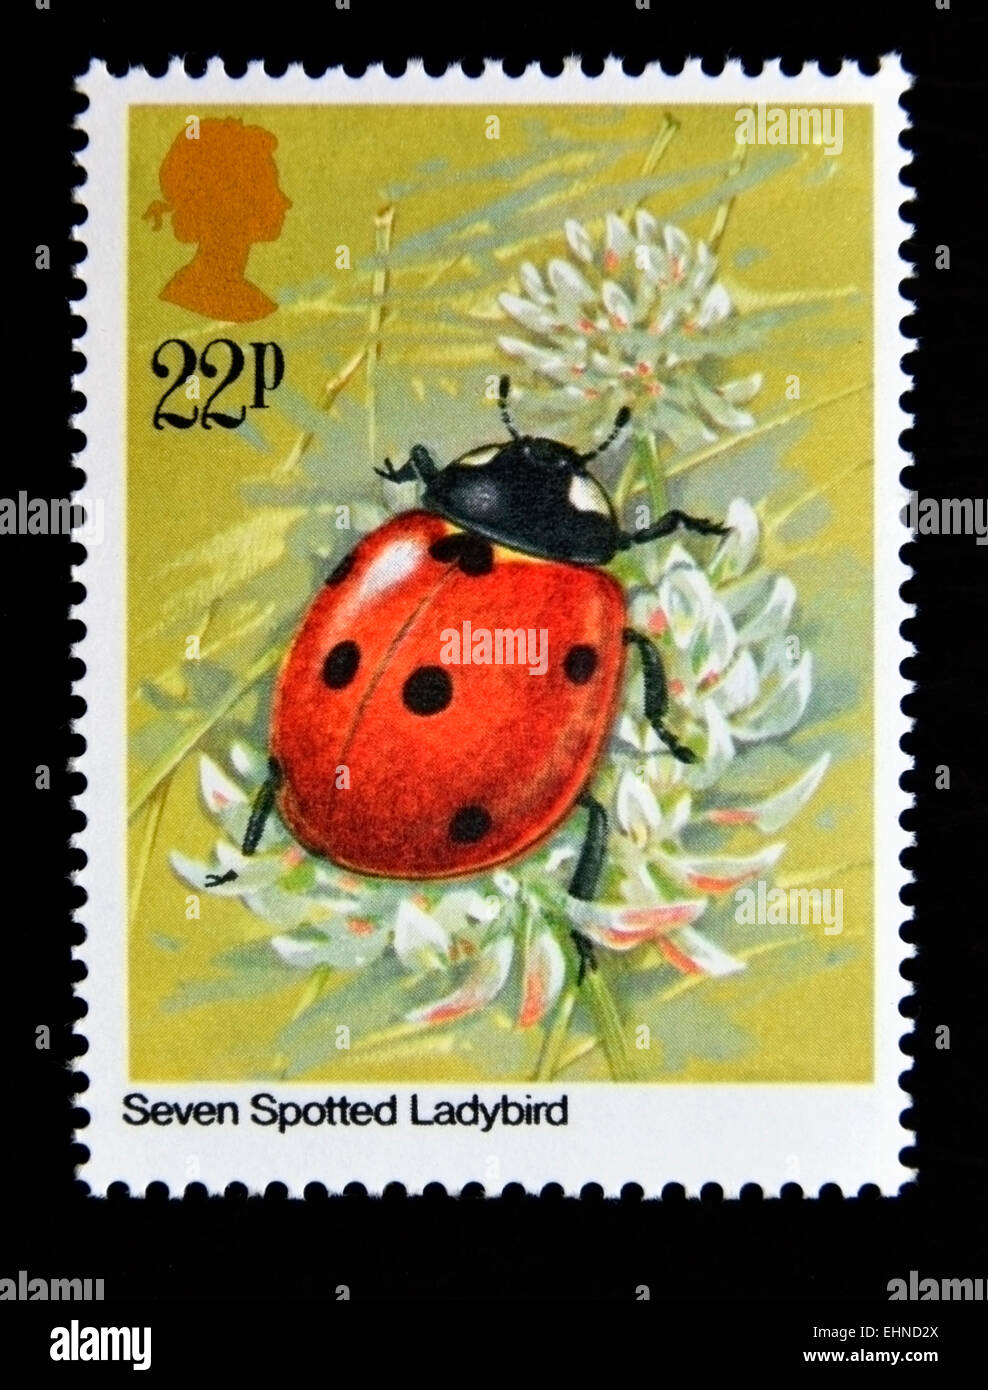 Francobollo. La Gran Bretagna. La regina Elisabetta II. 1985. Gli insetti. Sette Spotted Ladybird (Coccinella septempunctata). 22p. Foto Stock